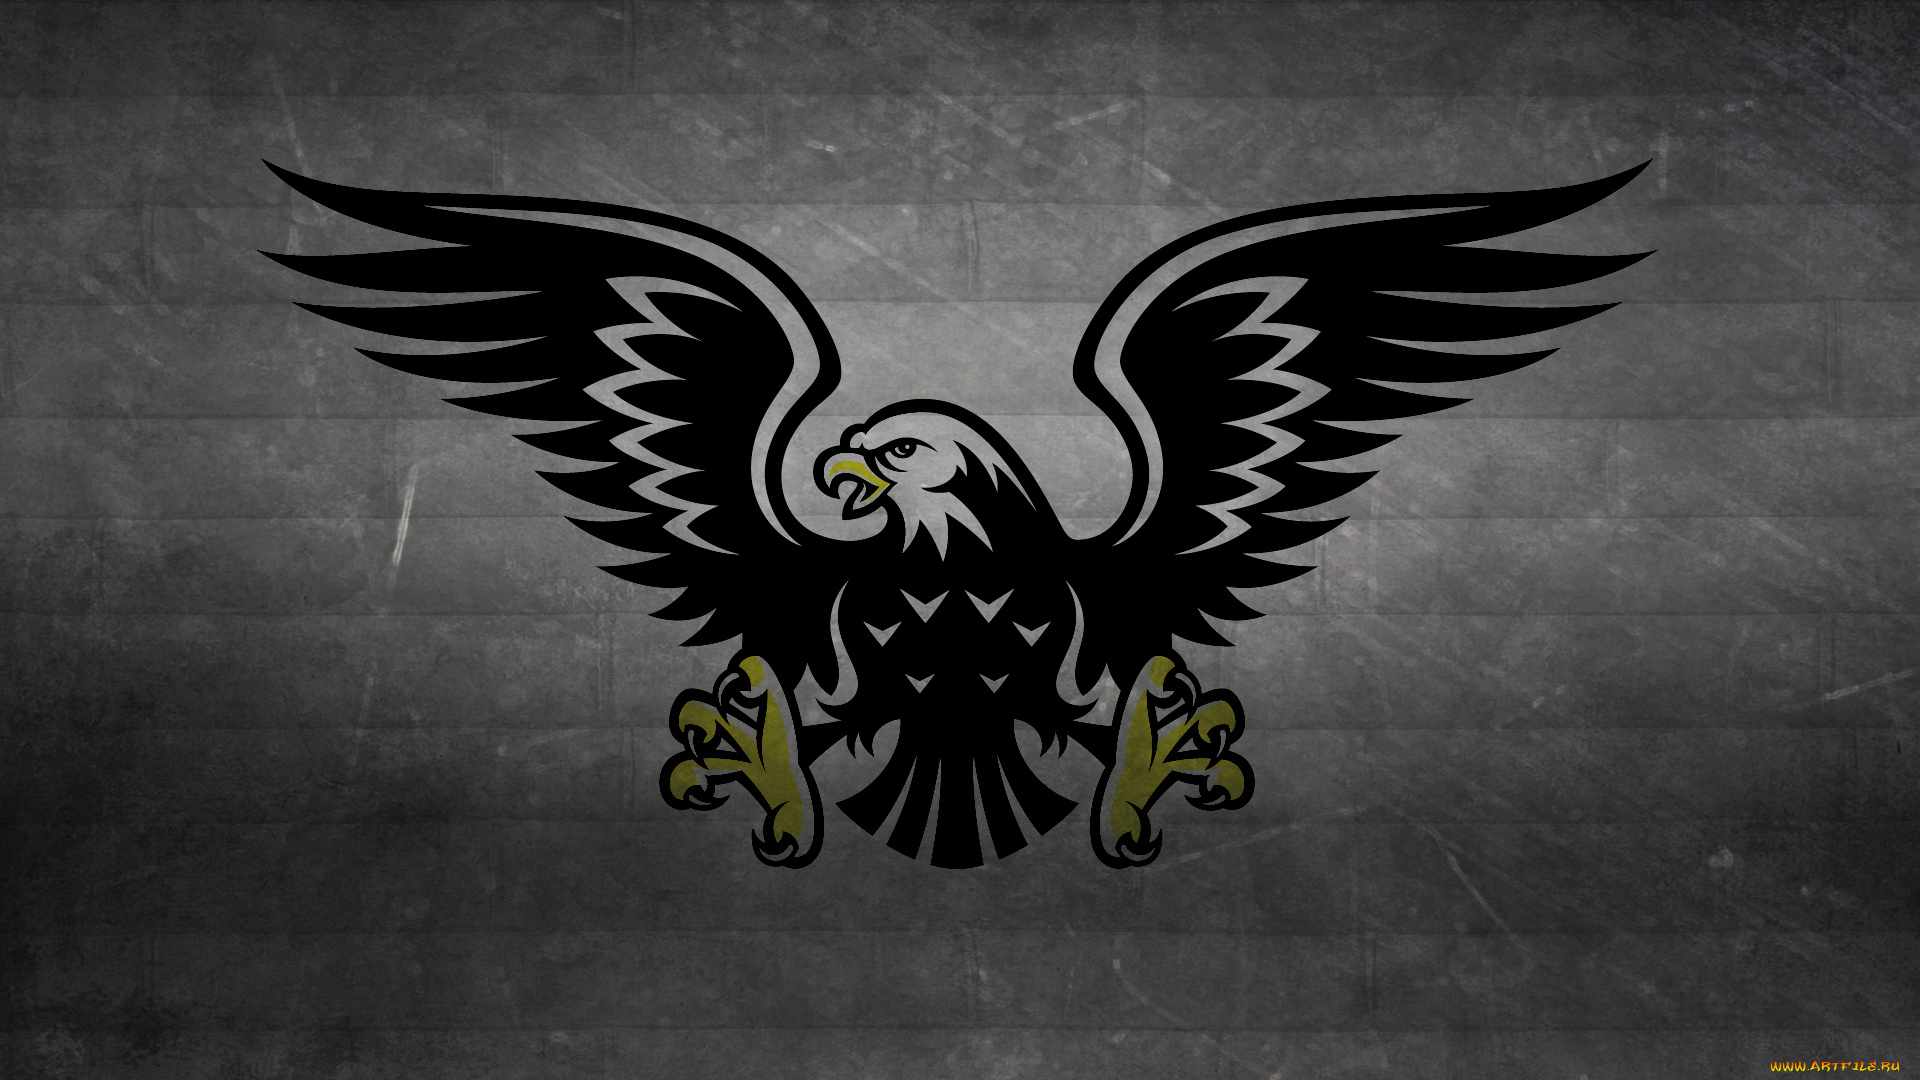 разное, надписи, логотипы, знаки, темный, фон, hawk, eagle, хищник, птица, ястреб, когти, крылья, полосы, черно-белый